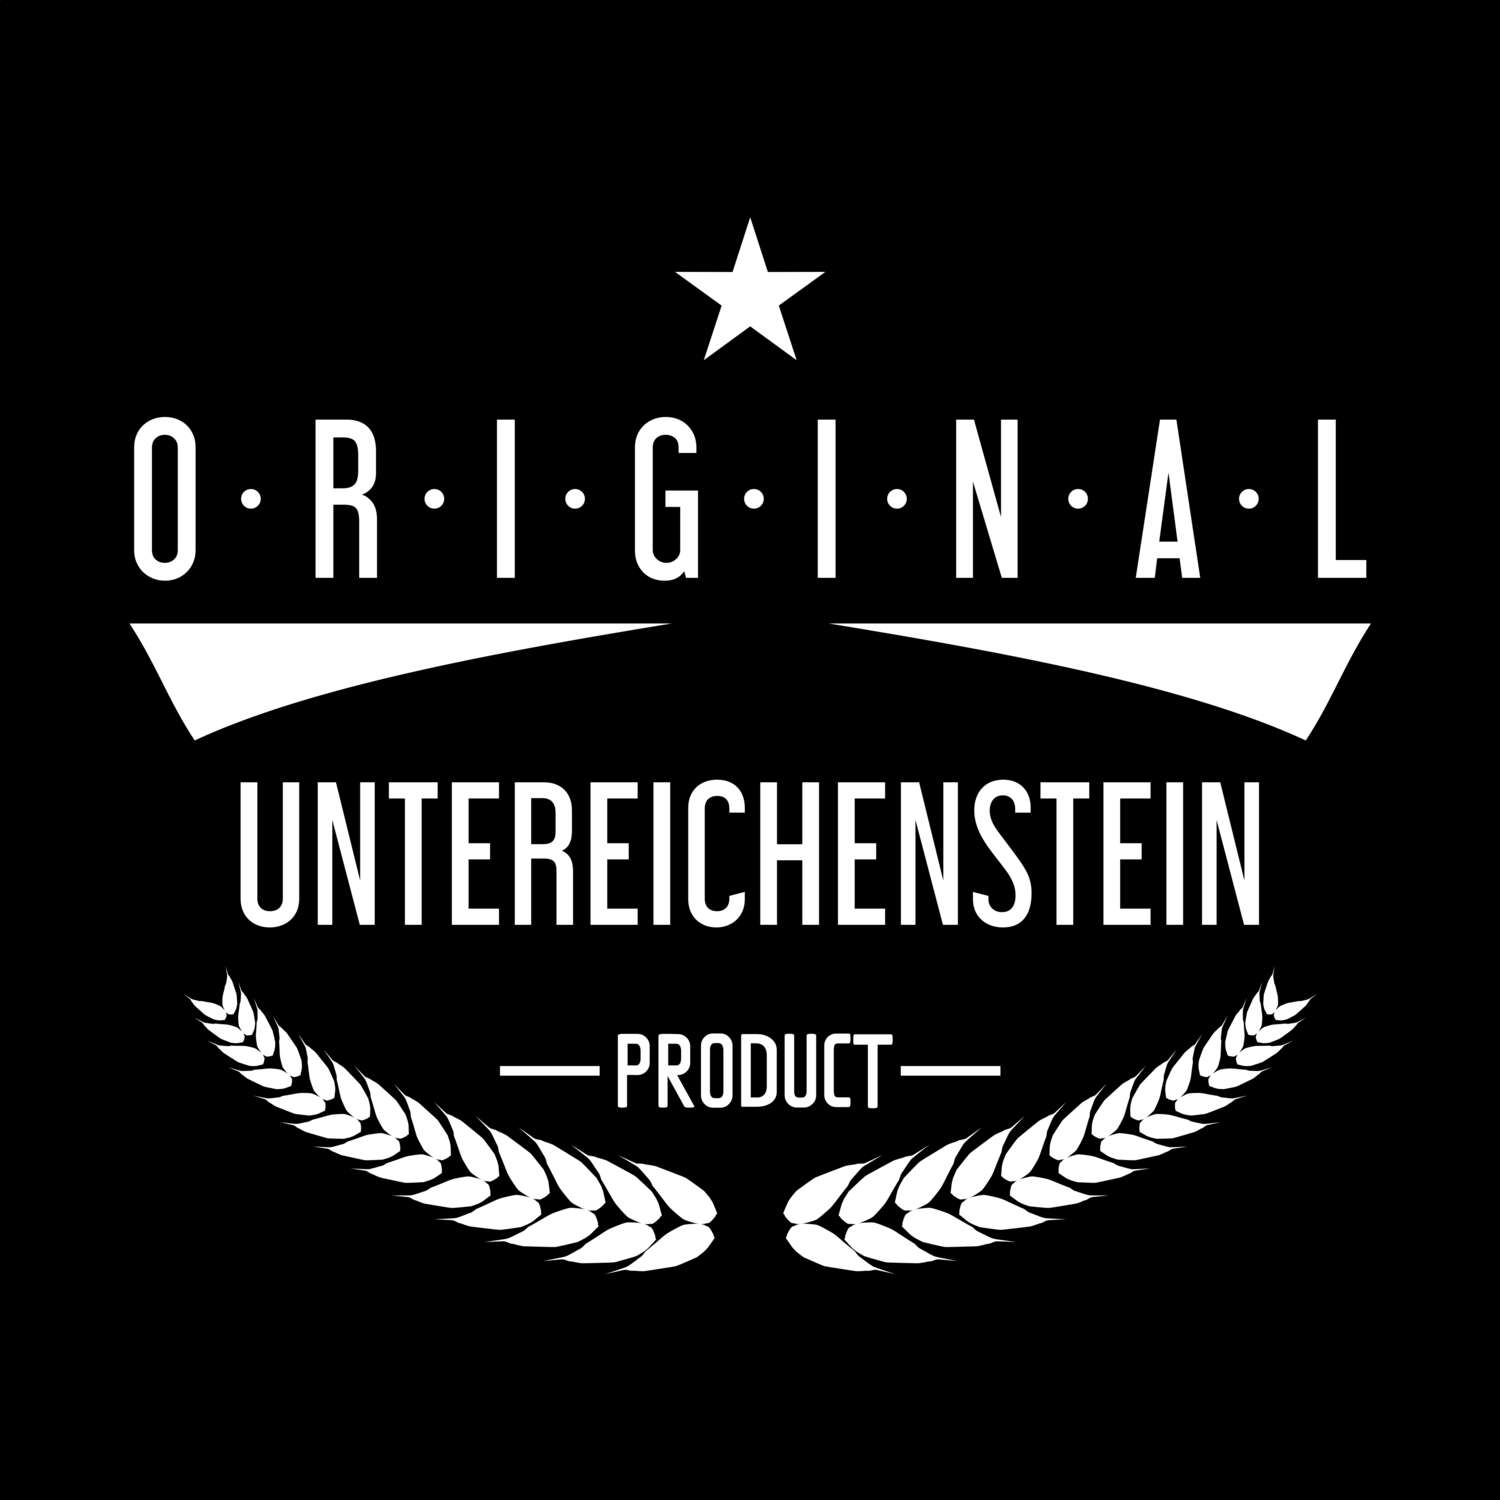 Untereichenstein T-Shirt »Original Product«